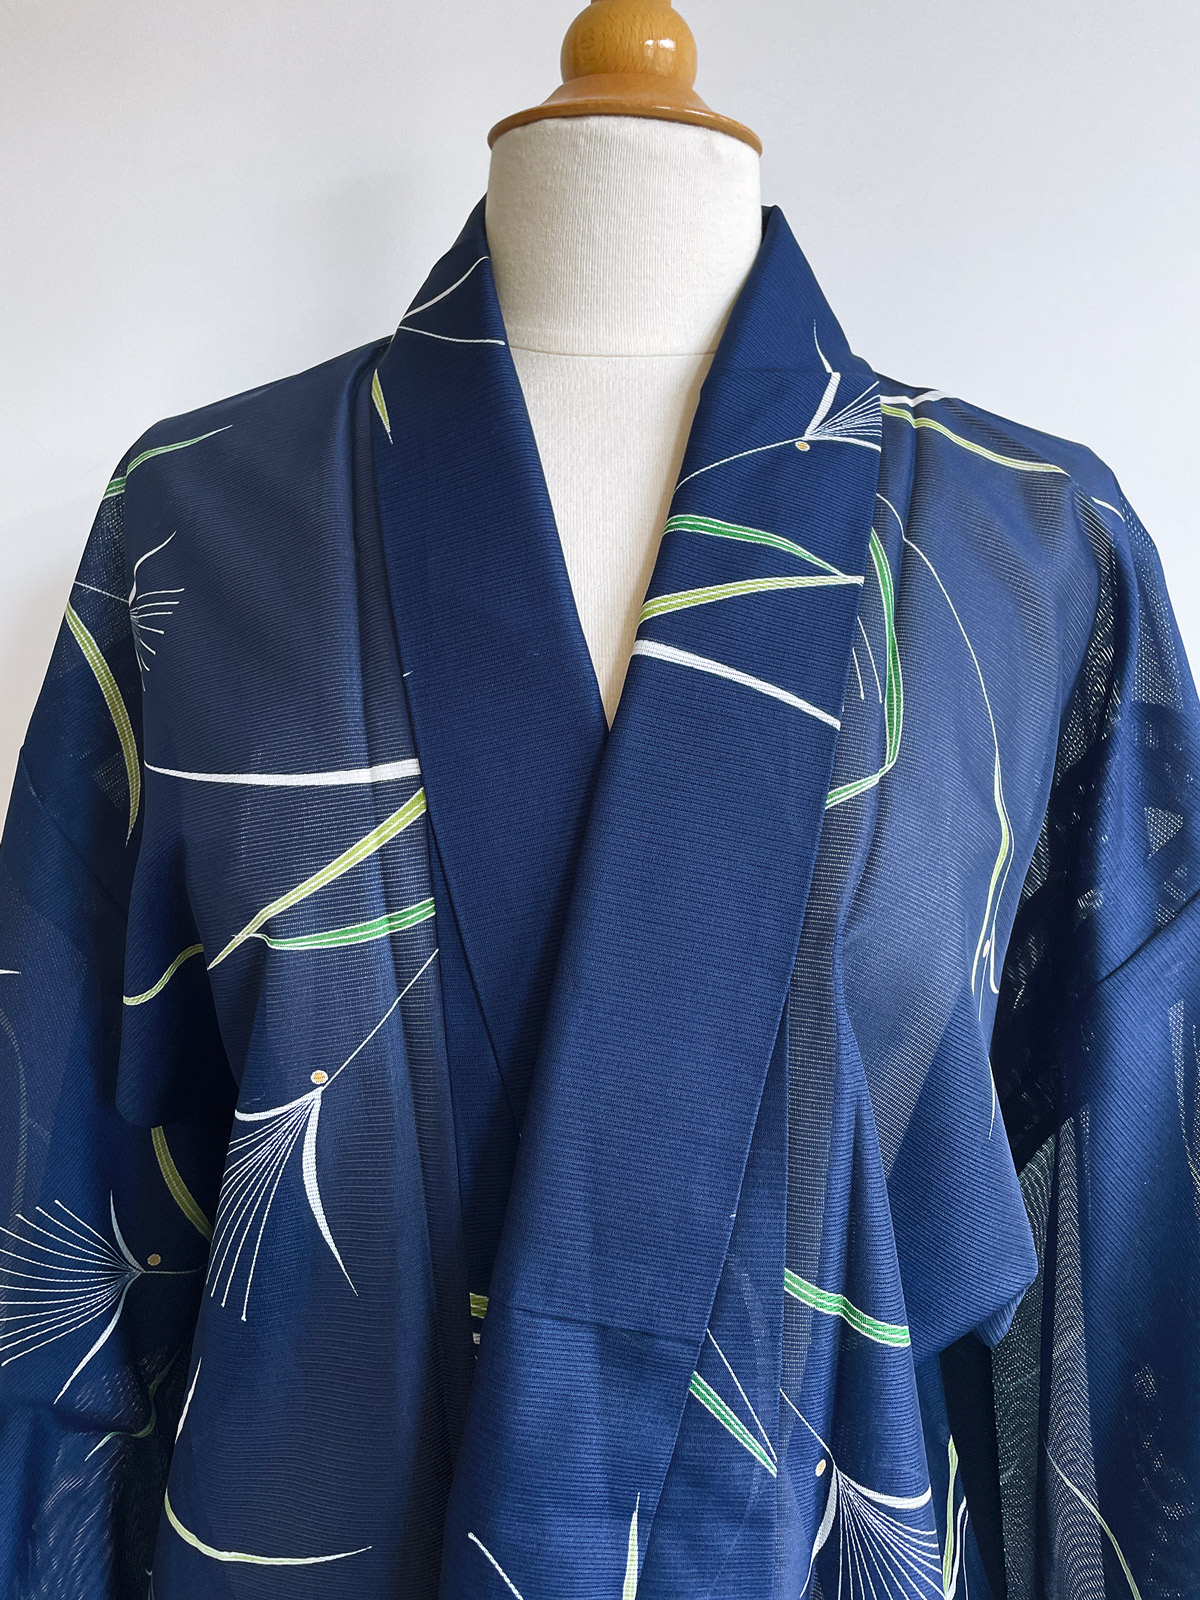 Seiran – Summer kimono in deep dark blue